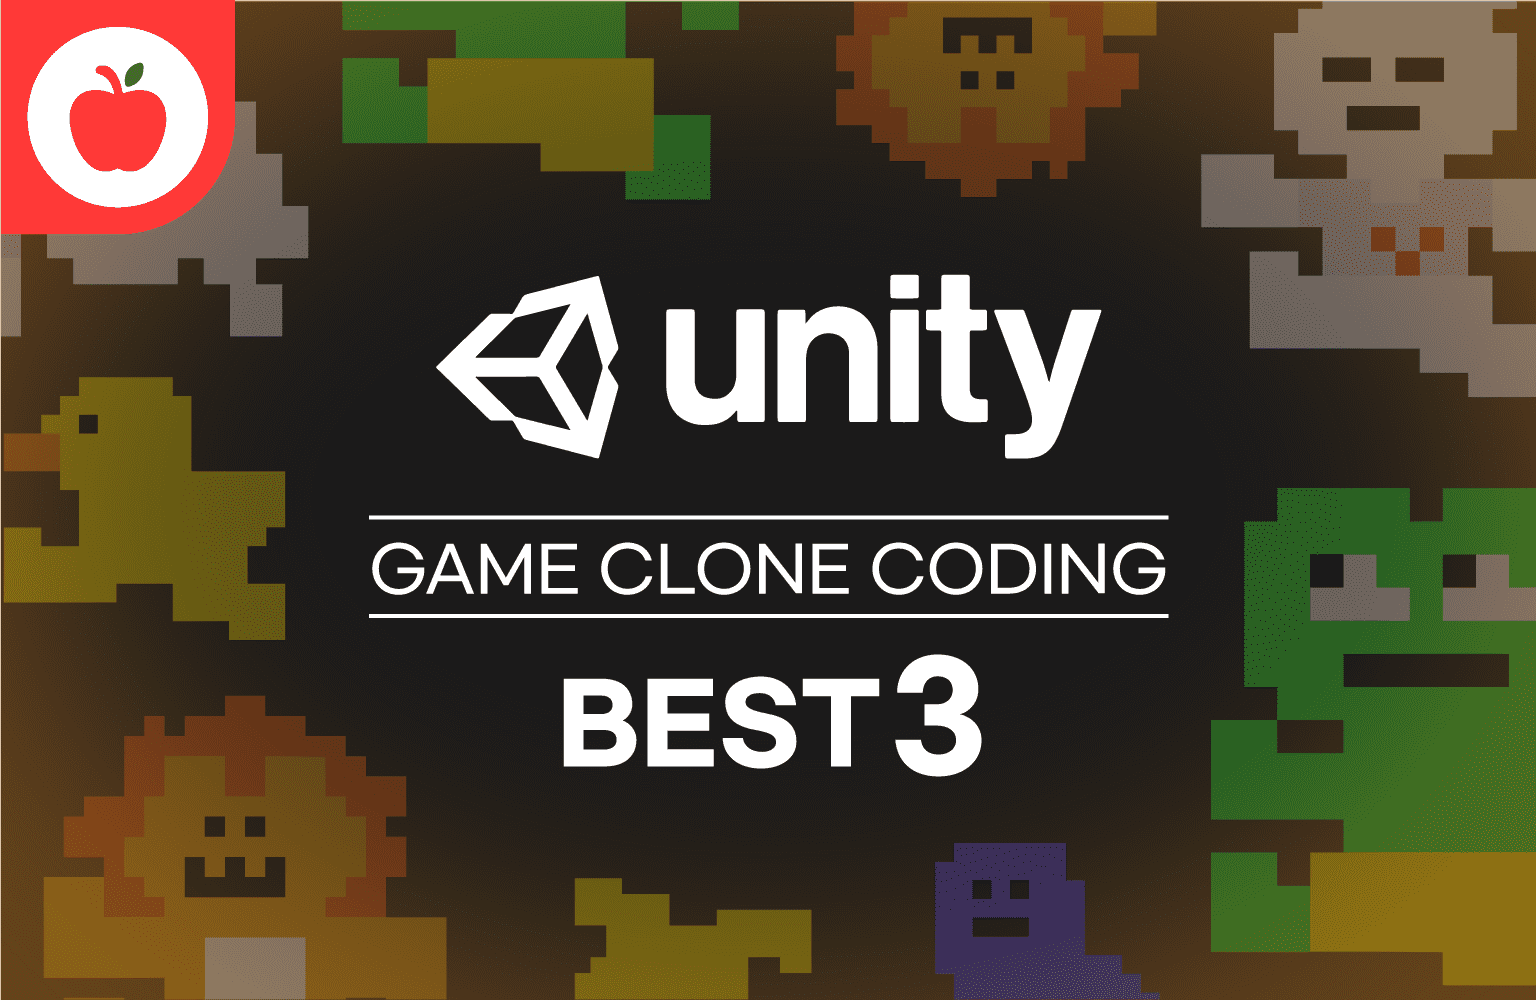 누구나 할 수 있다! 따라하며 배워보는 Unity3D 게임 클론 Best 3 - 인프런 | 강의